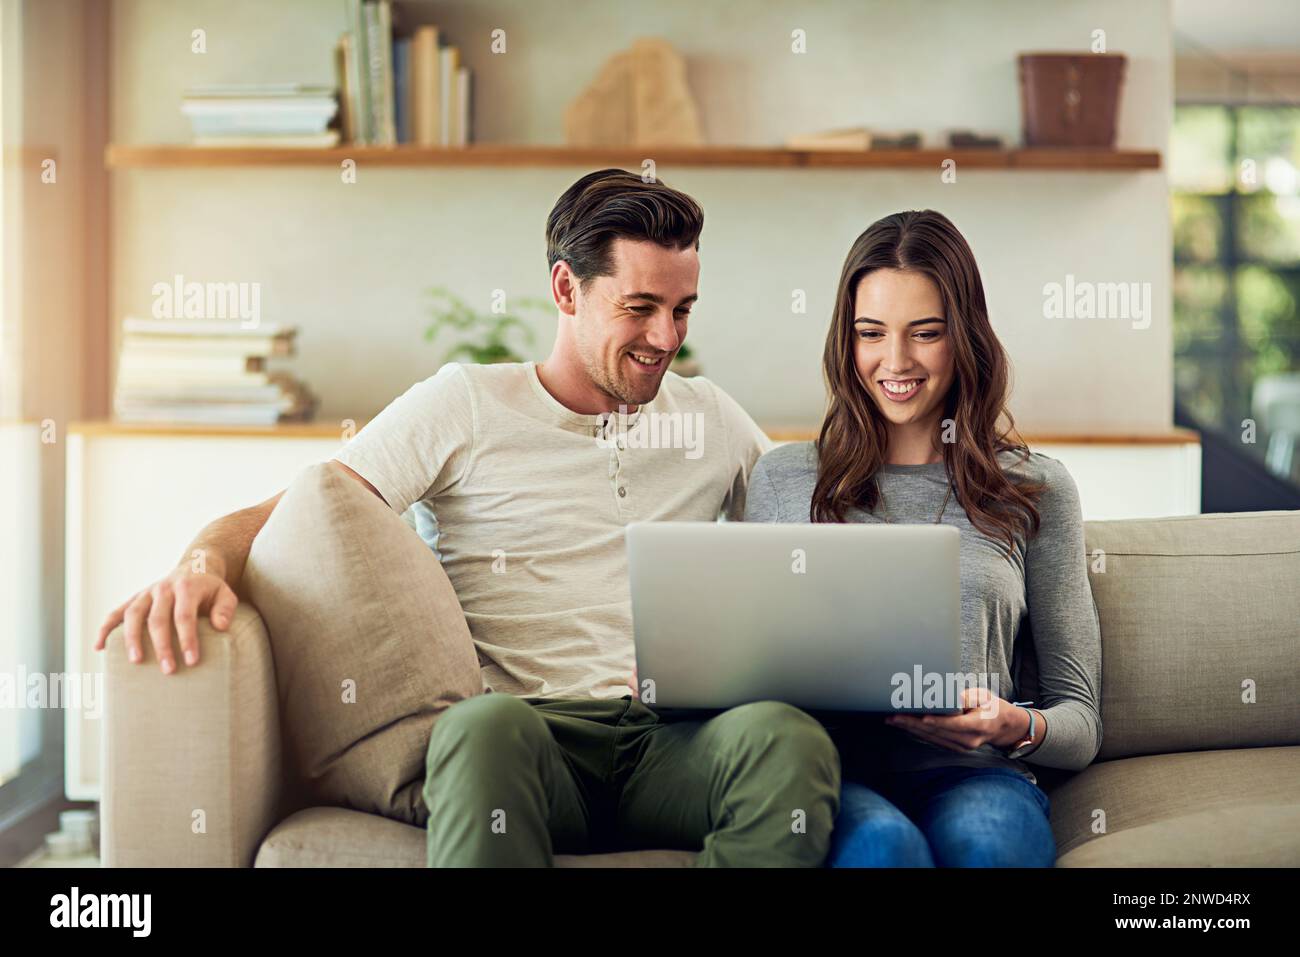 Das Online-Erlebnis ist noch besser, wenn es geteilt wird. Aufnahme eines glücklichen jungen Paares, das zu Hause einen Laptop auf dem Sofa benutzt. Stockfoto